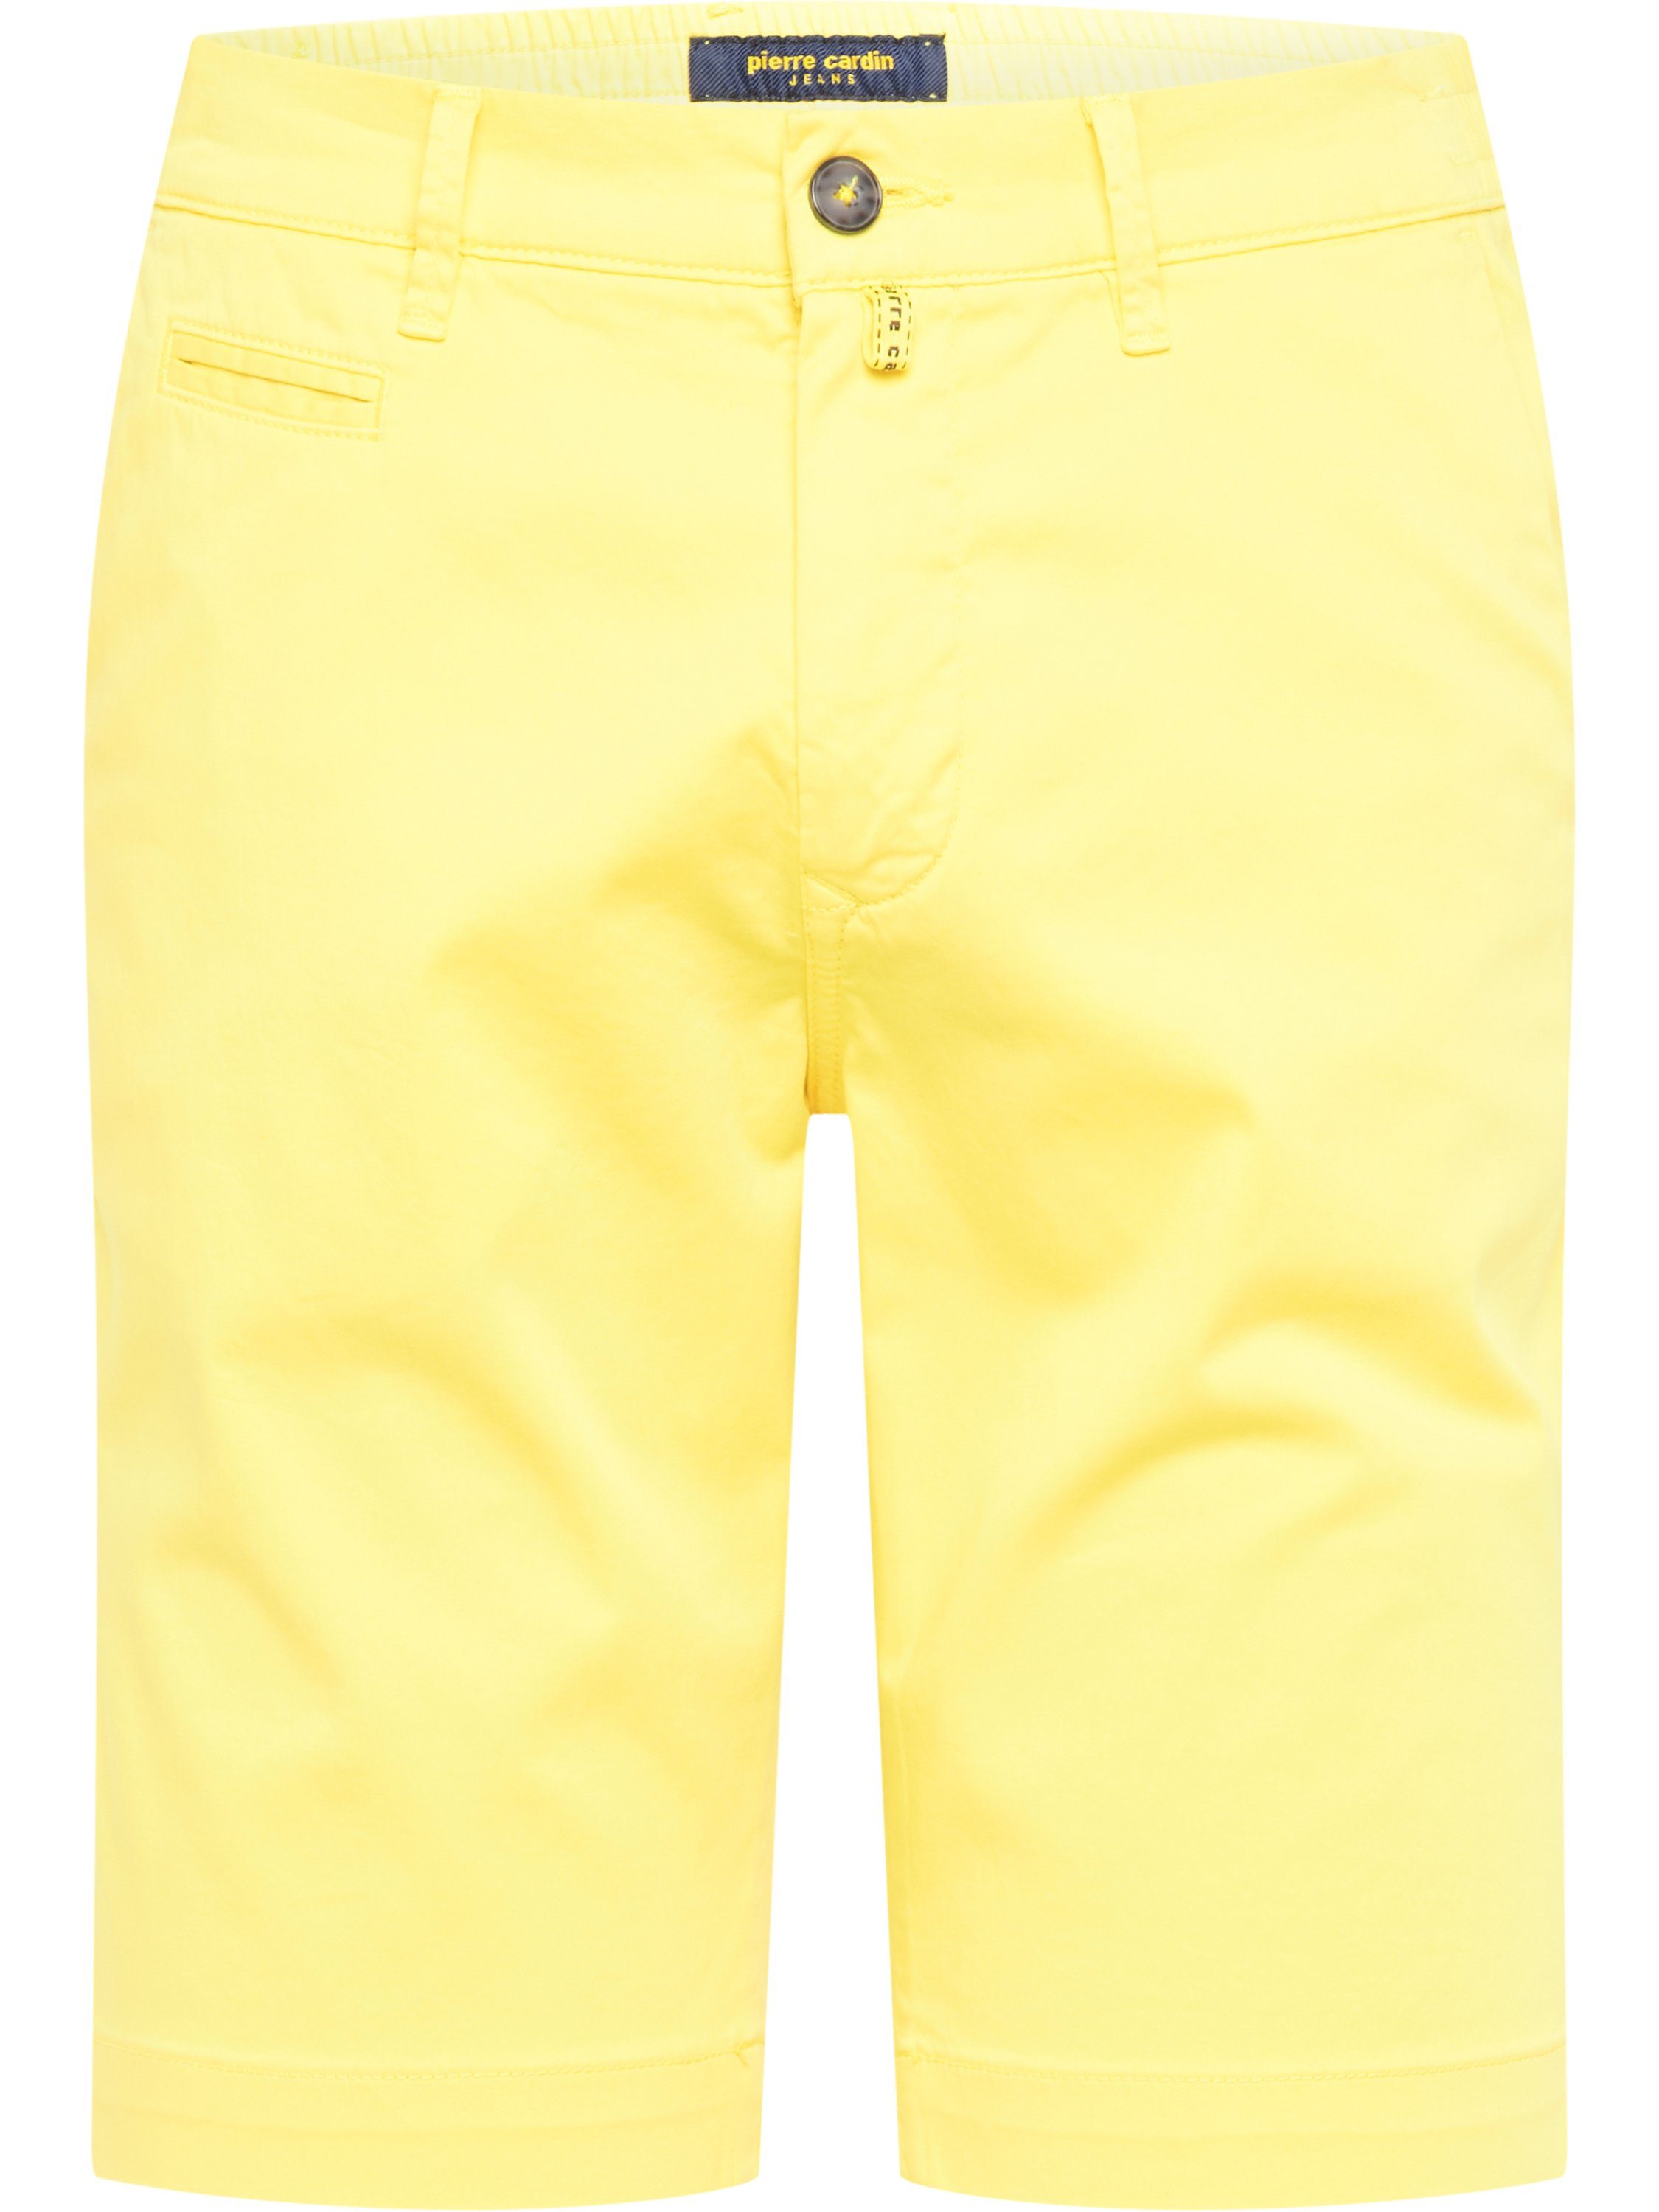 5-Pocket-Jeans Cardin BERMUDA 3477 Pierre CARDIN AIRTOUCH LYON yellow PIERRE 2080.46